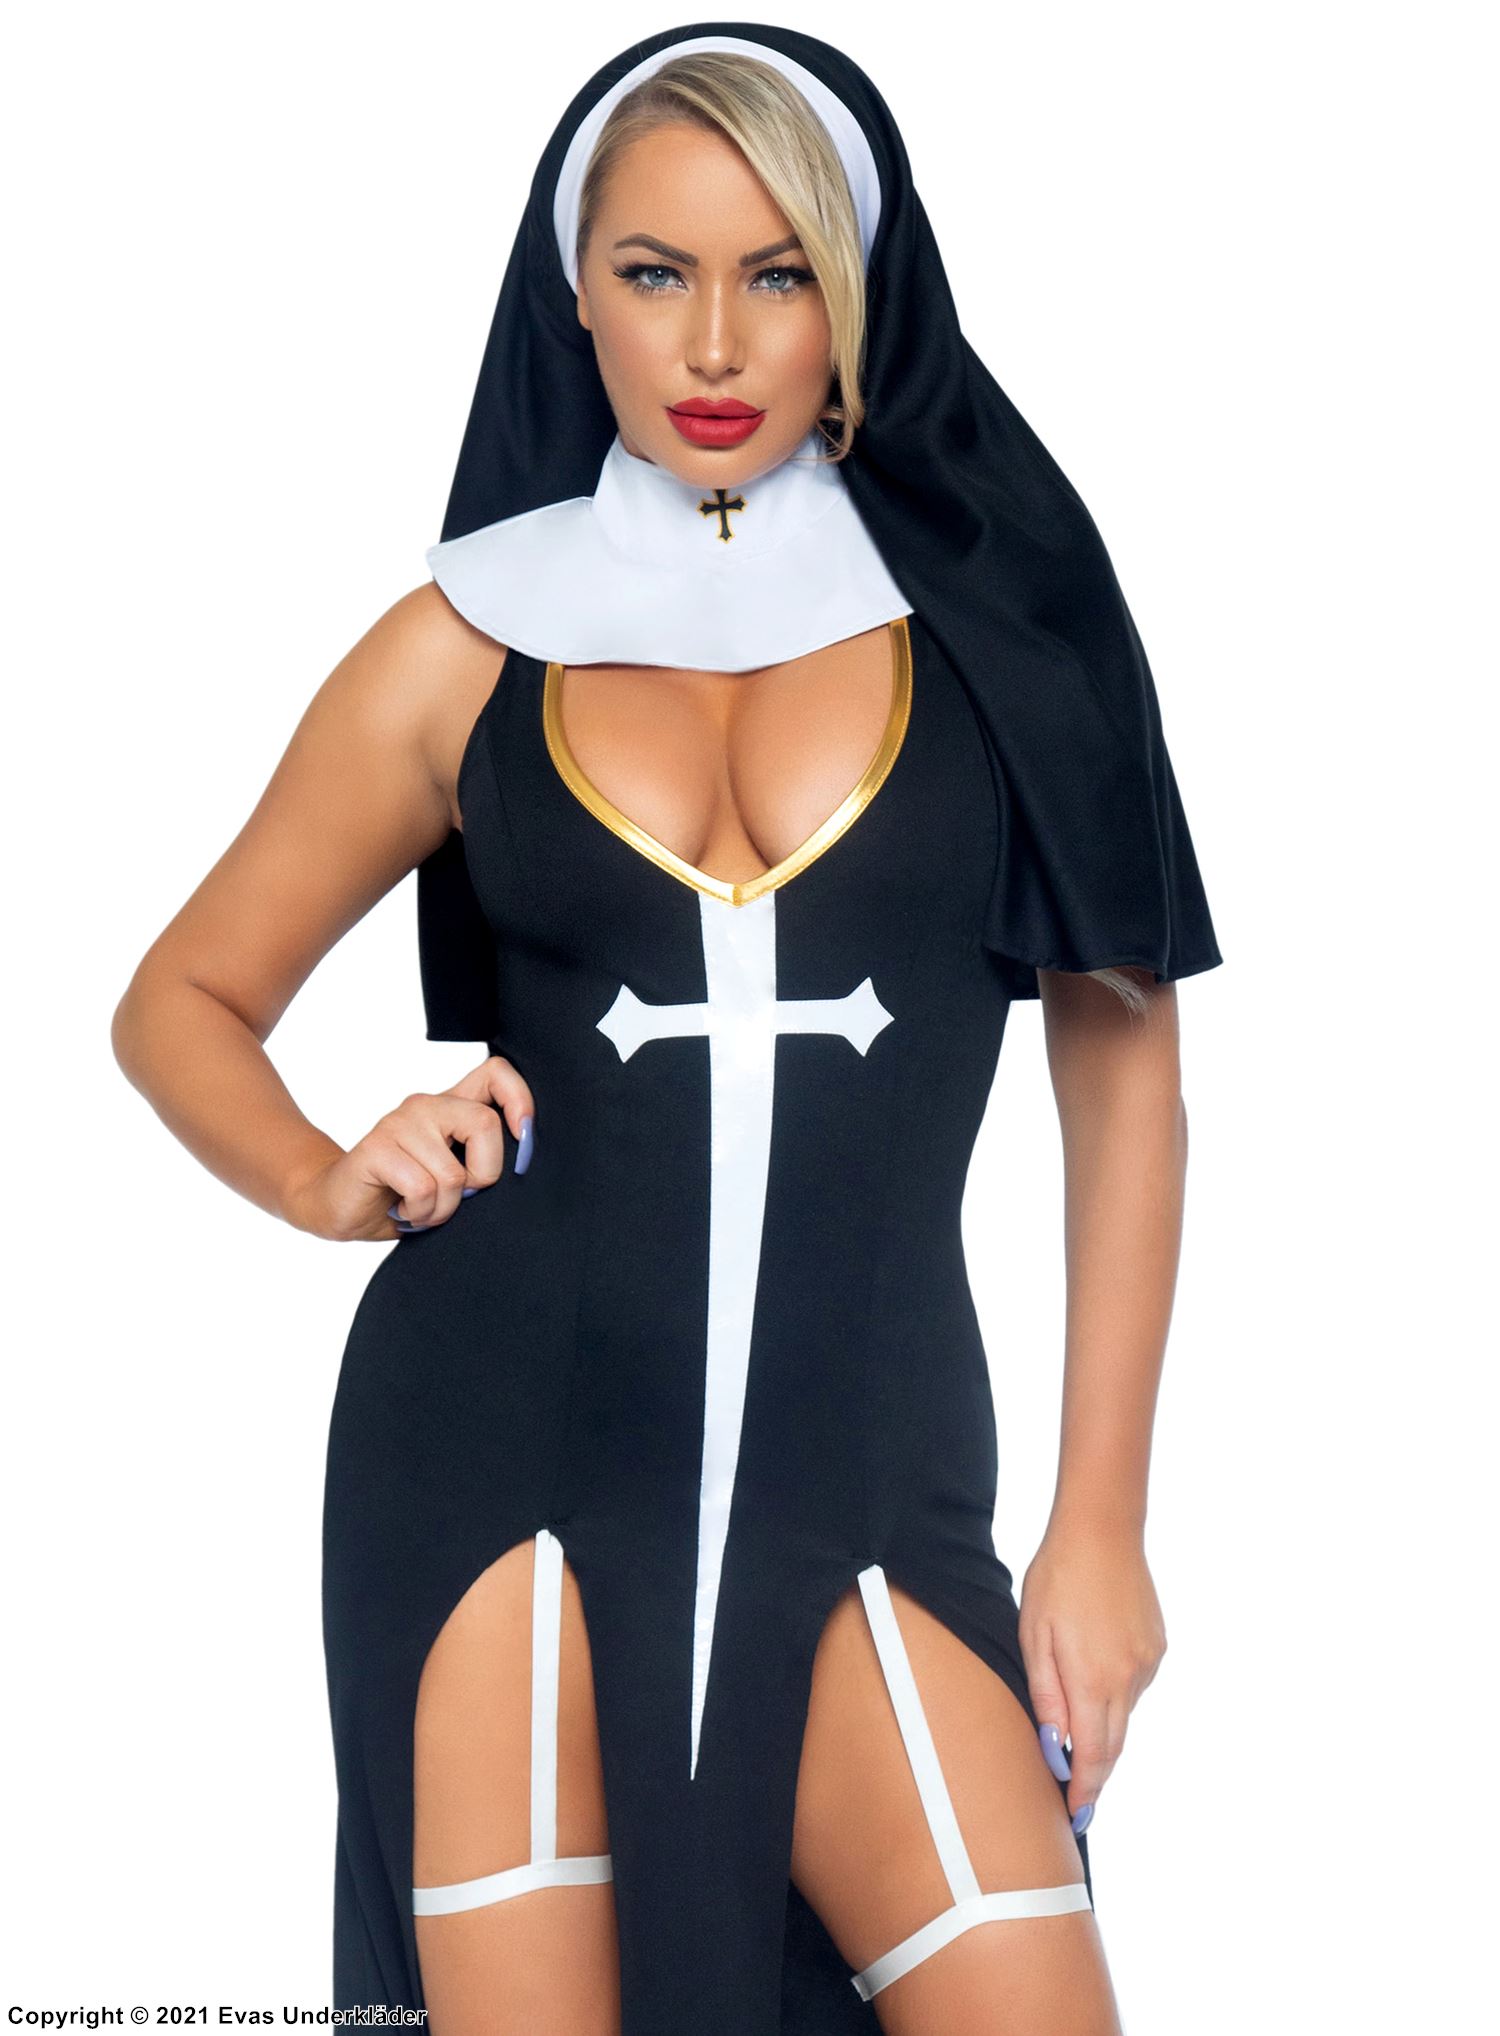 Nonne, kostyme-kjole, høy spalte, dyp utringning, kors, innbygd strømpebåndsstropp